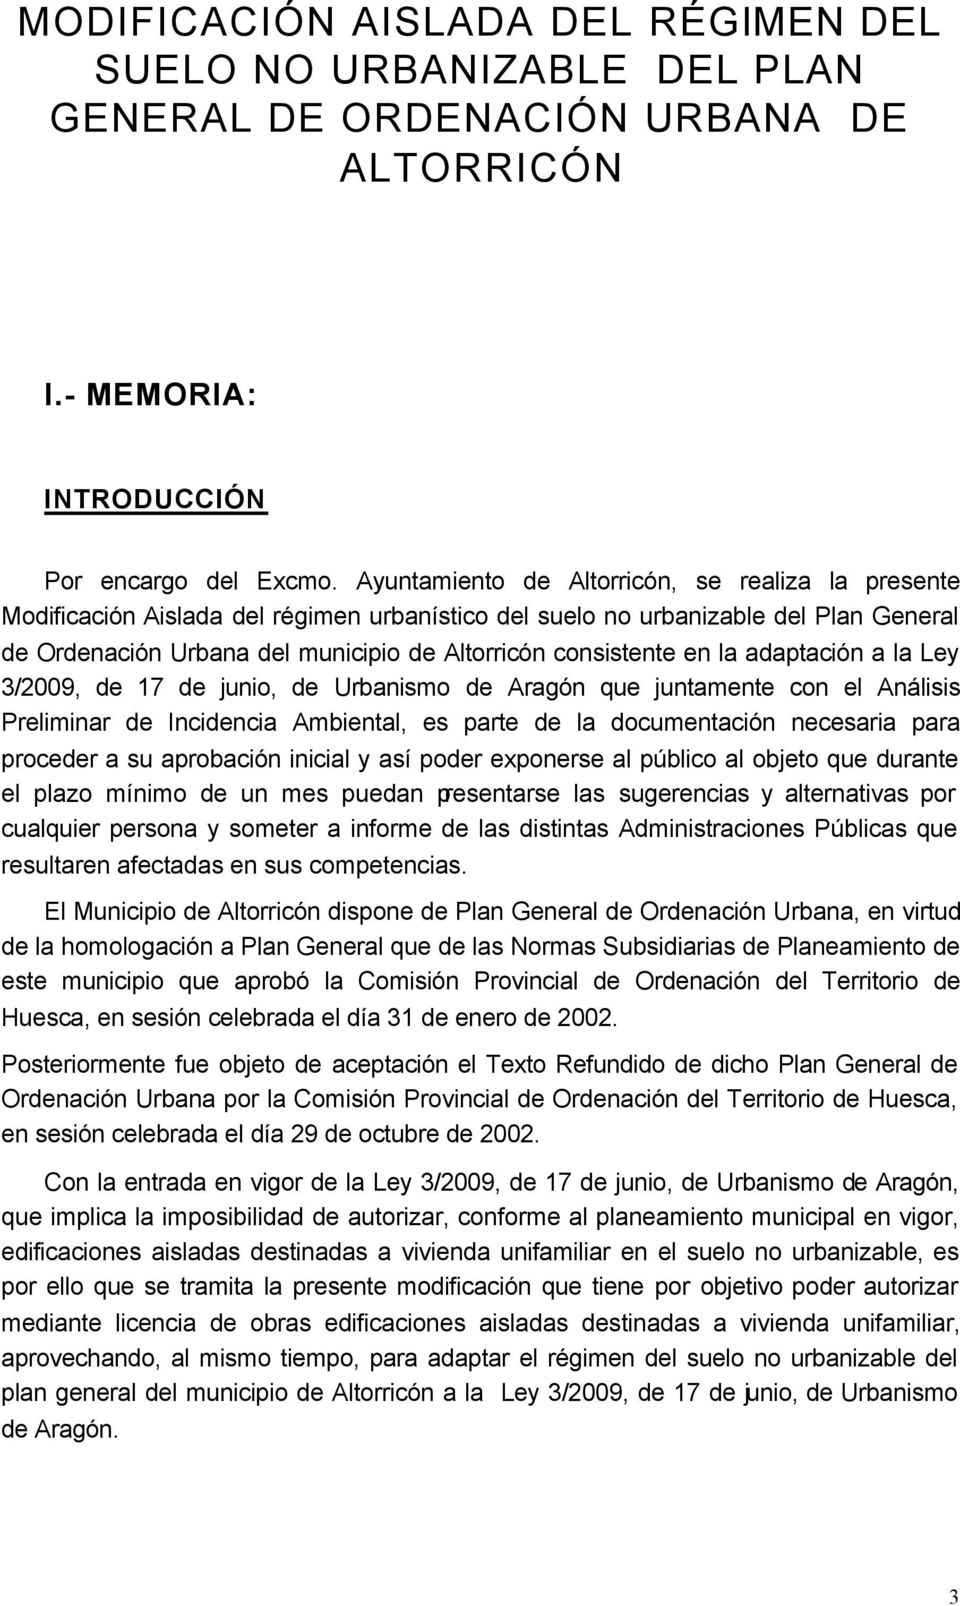 en la adaptación a la Ley 3/2009, de 17 de junio, de Urbanismo de Aragón que juntamente con el Análisis Preliminar de Incidencia Ambiental, es parte de la documentación necesaria para proceder a su